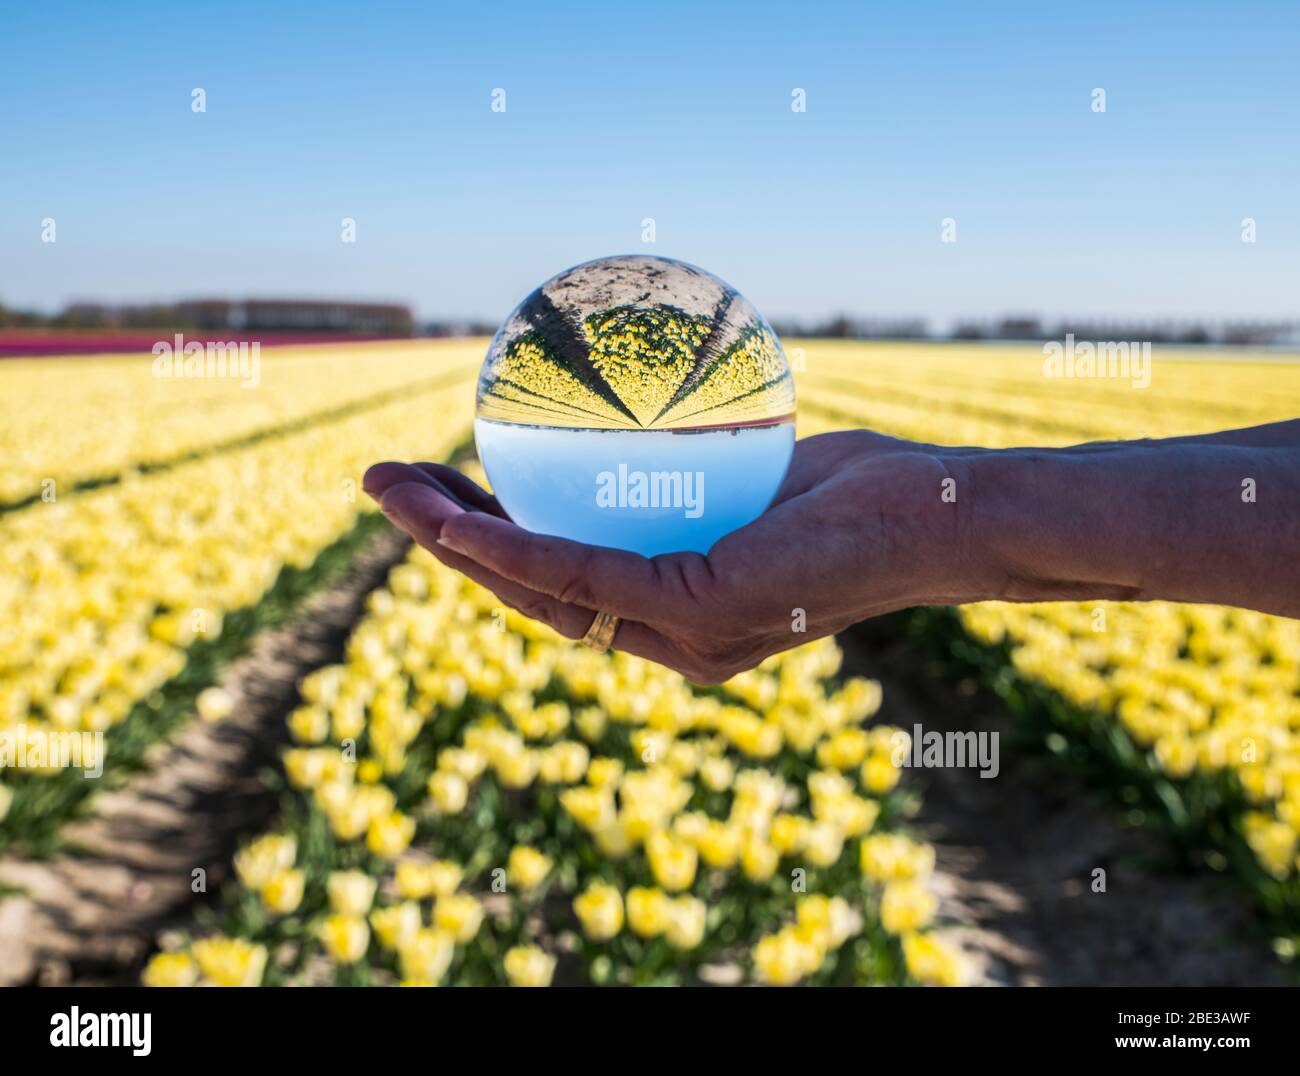 tulipani olandesi campi in viola e giallo visto attraverso sfera di vetro palla in mano womans Foto Stock